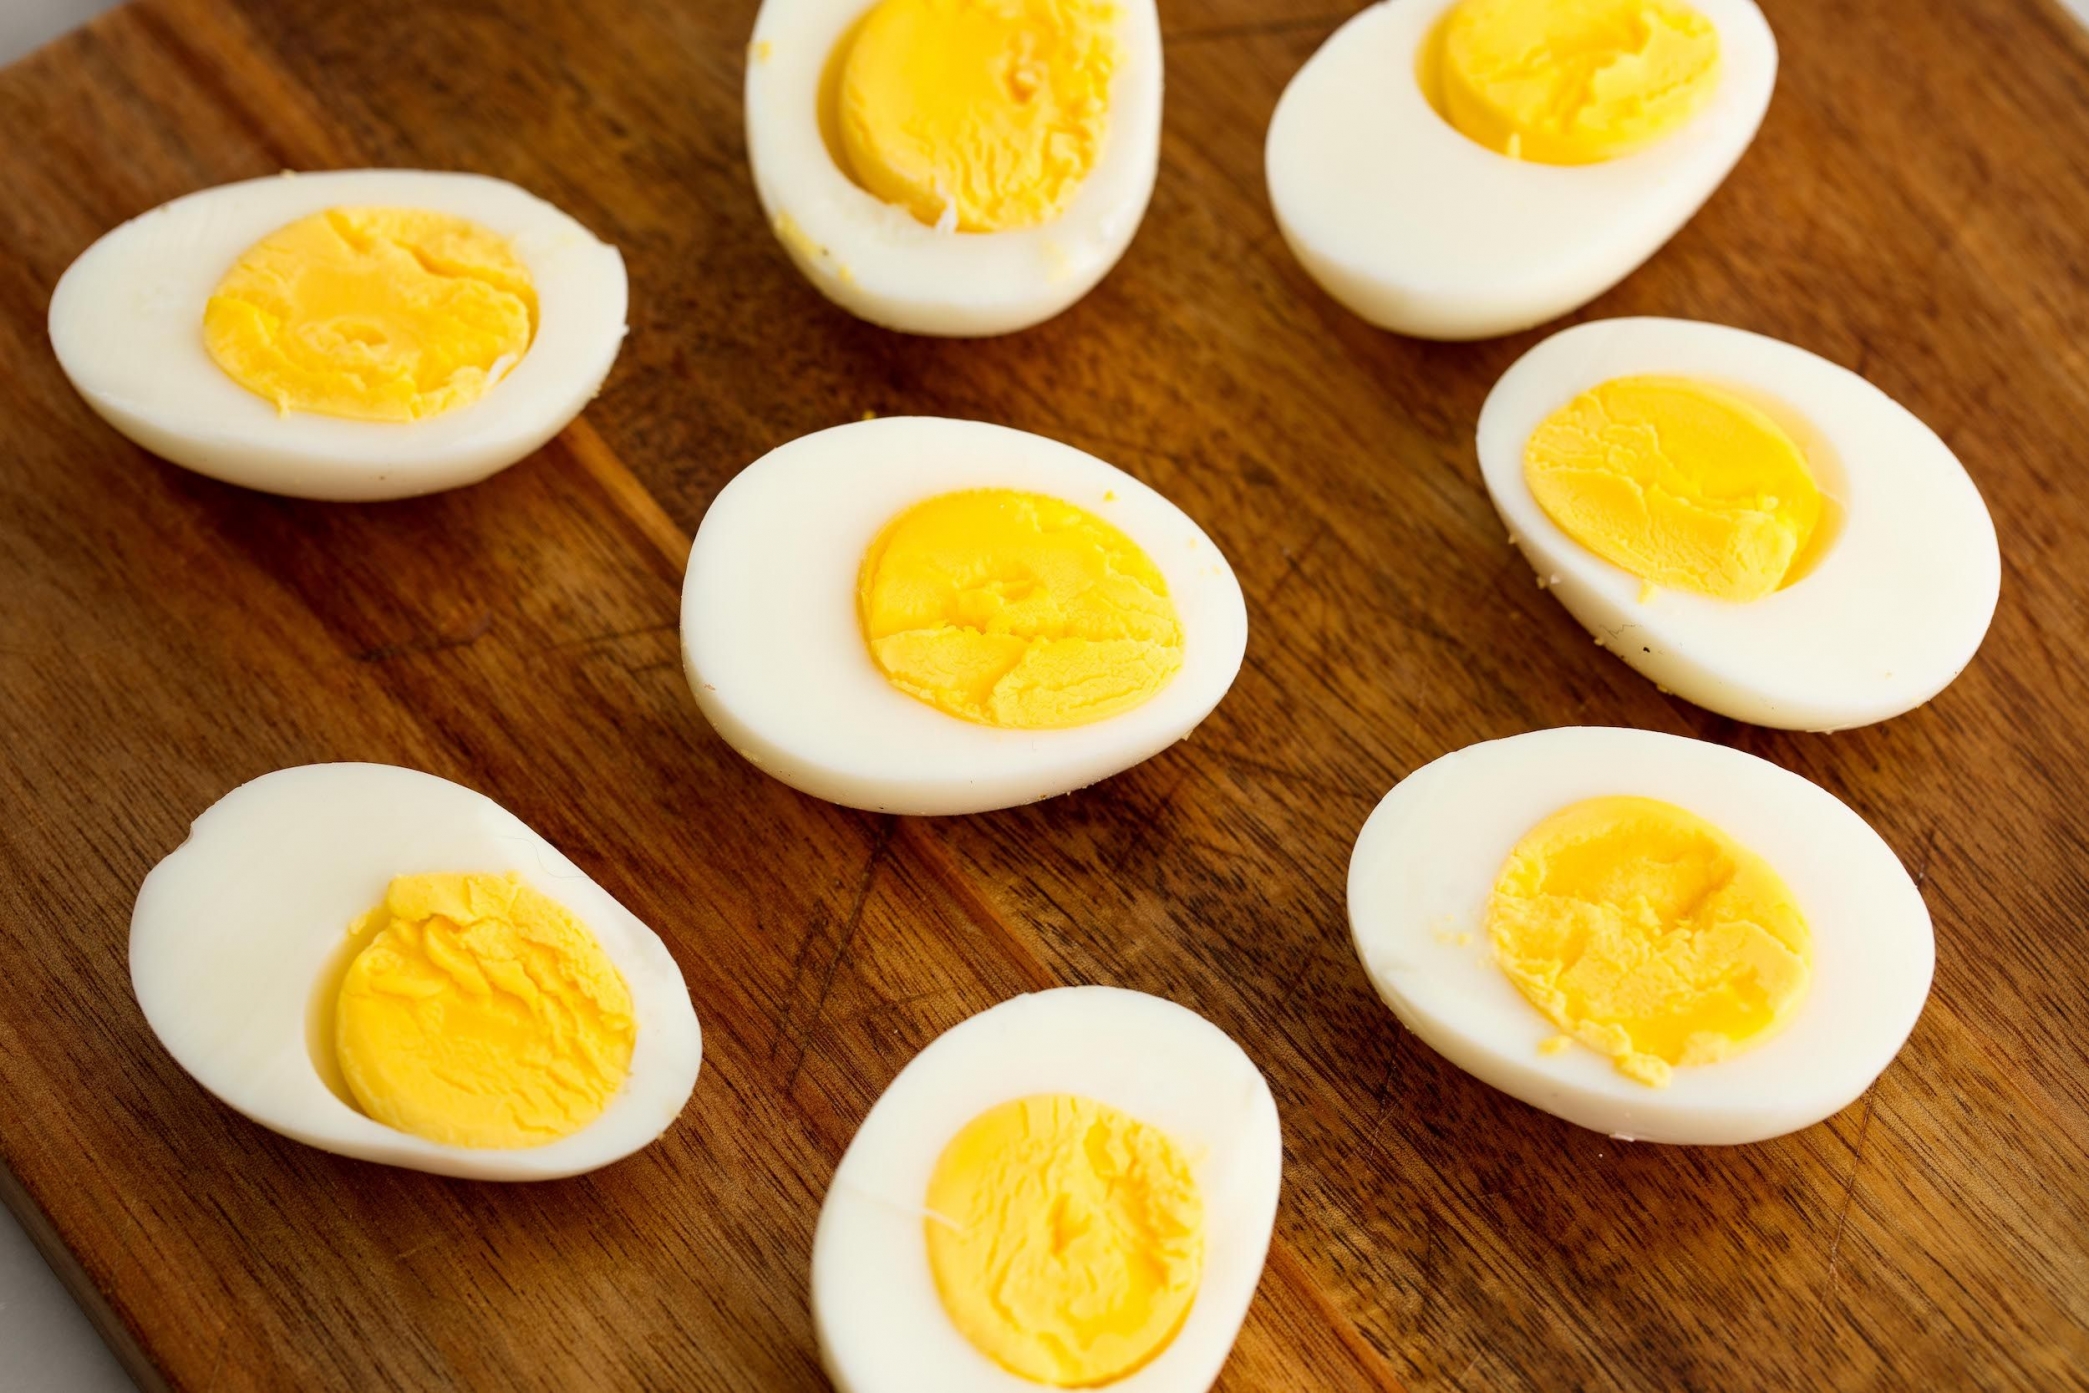 العلاقة بين تناول صفار البيض وزيادة الكوليسترول